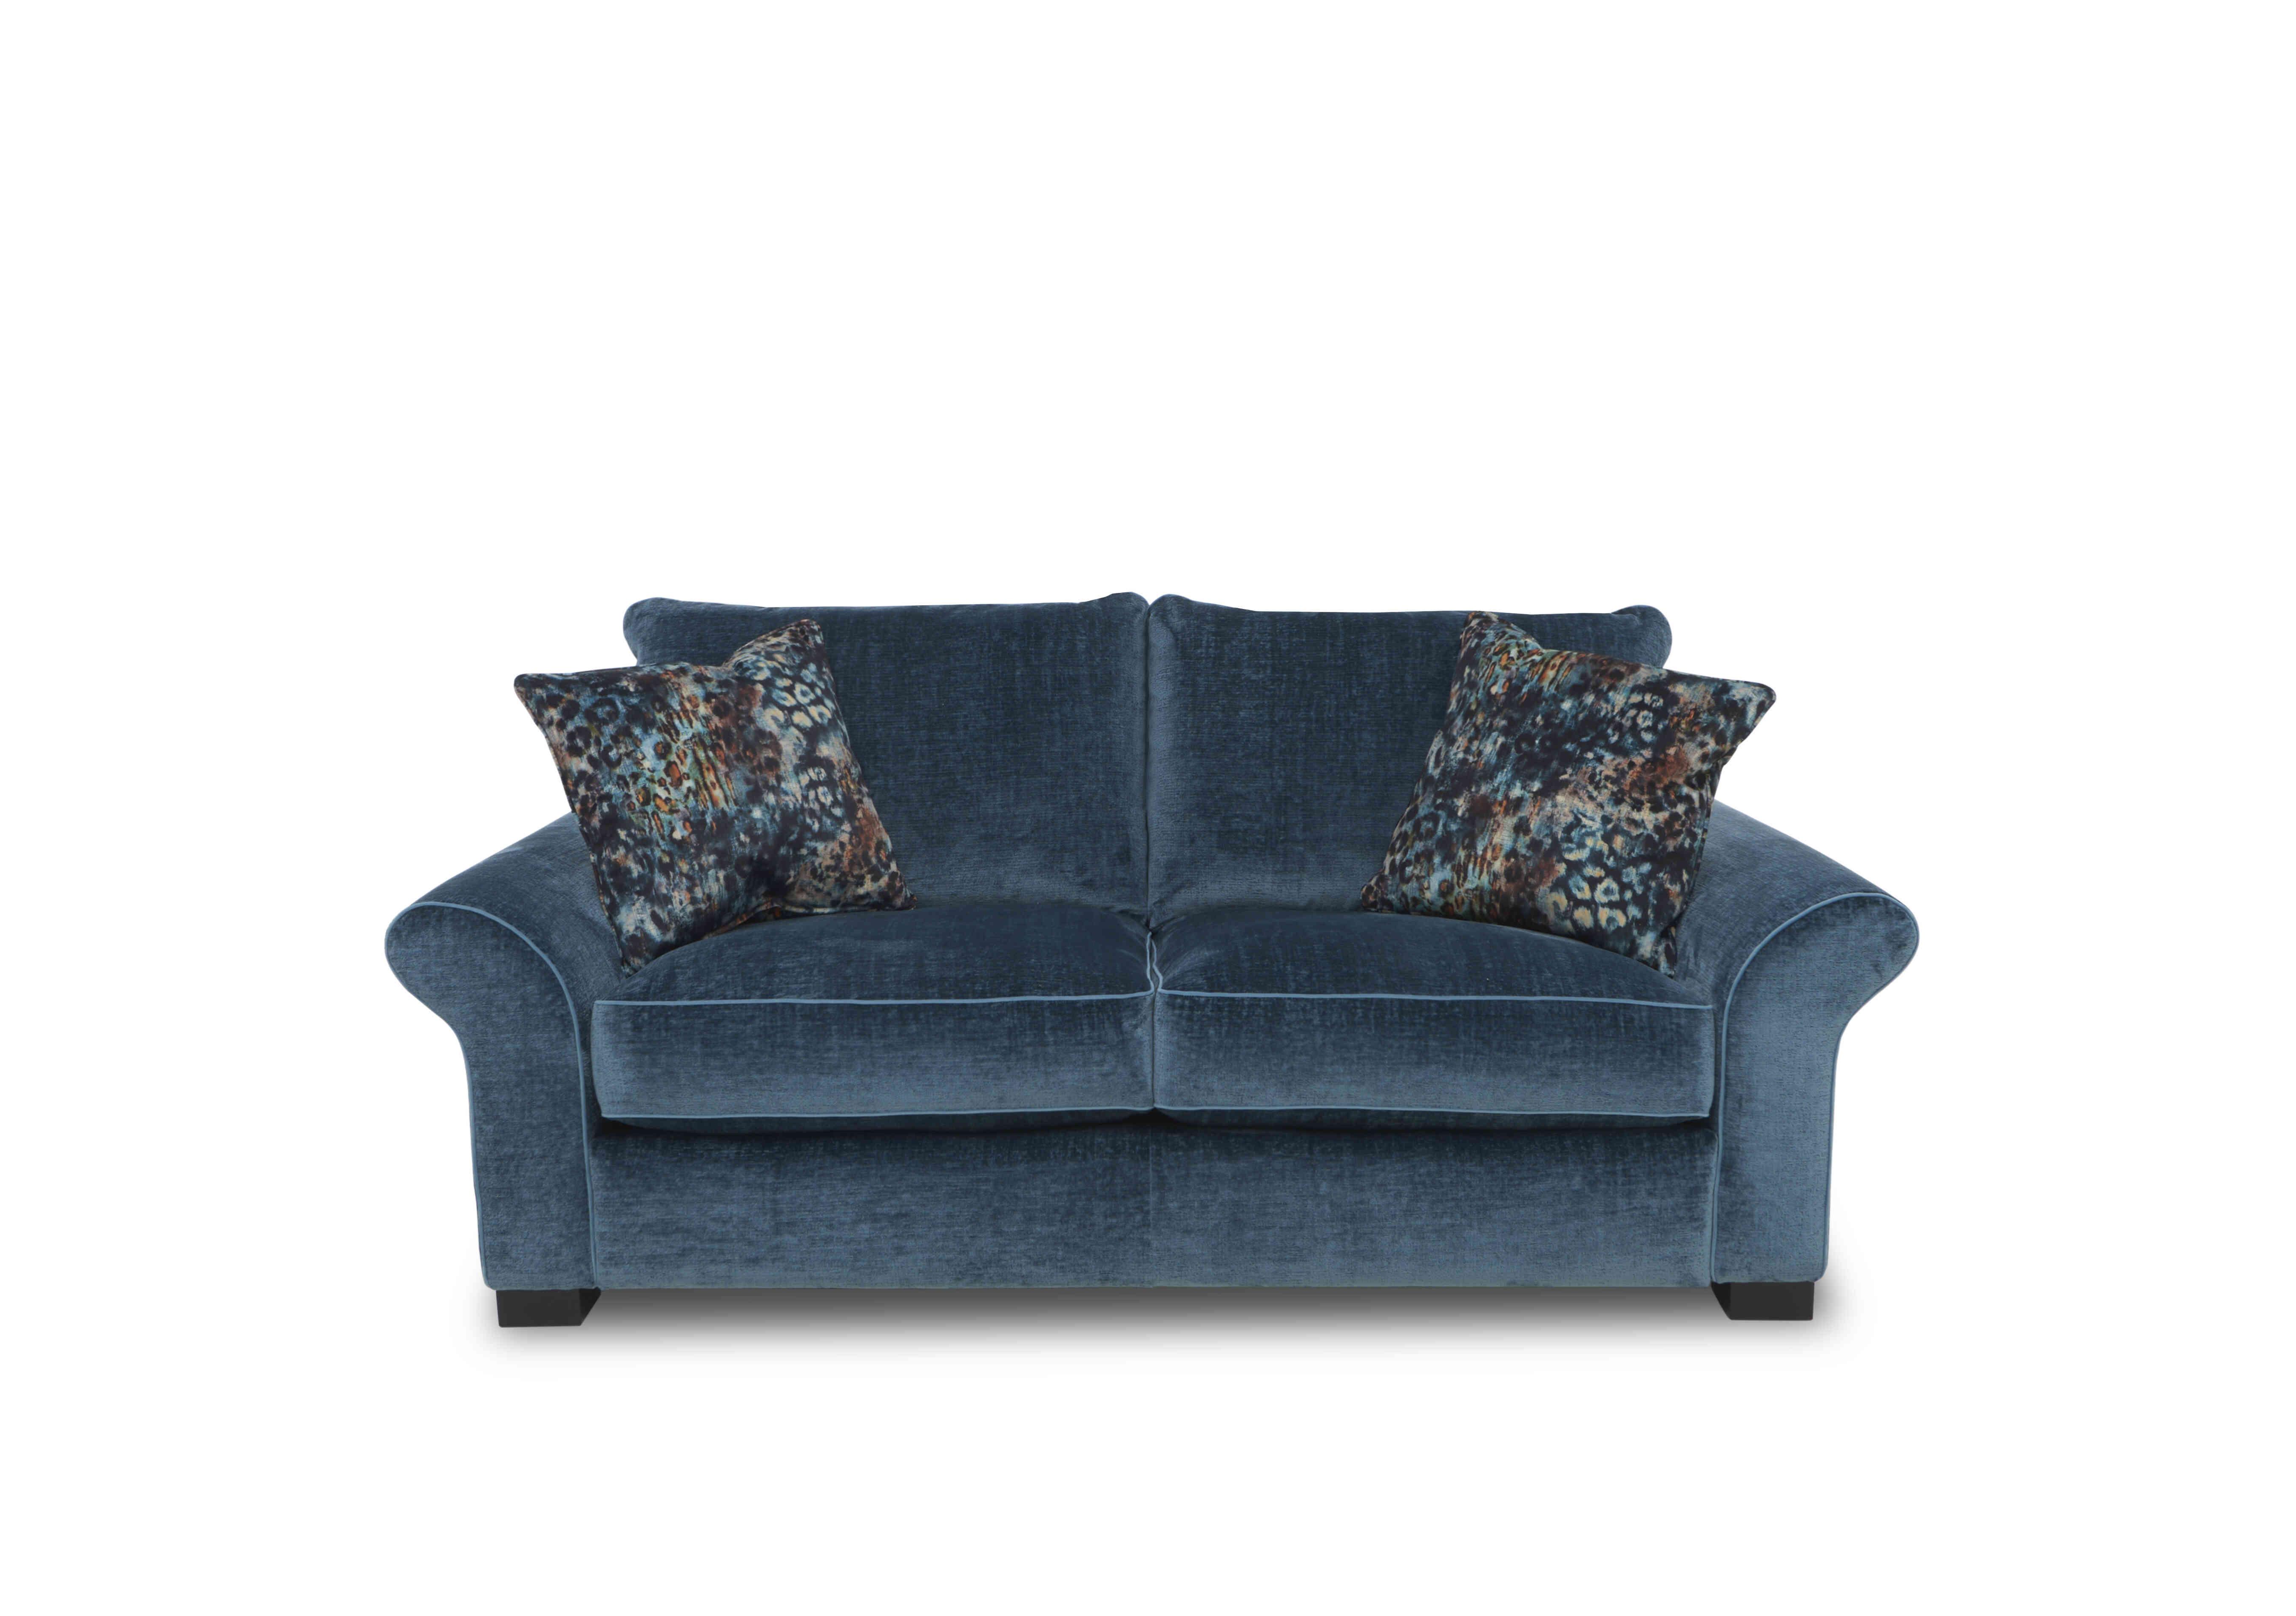 Modern Classics Hyde Park 2 Seater Sofa in Remini Petrol Blue Cp Mf on Furniture Village